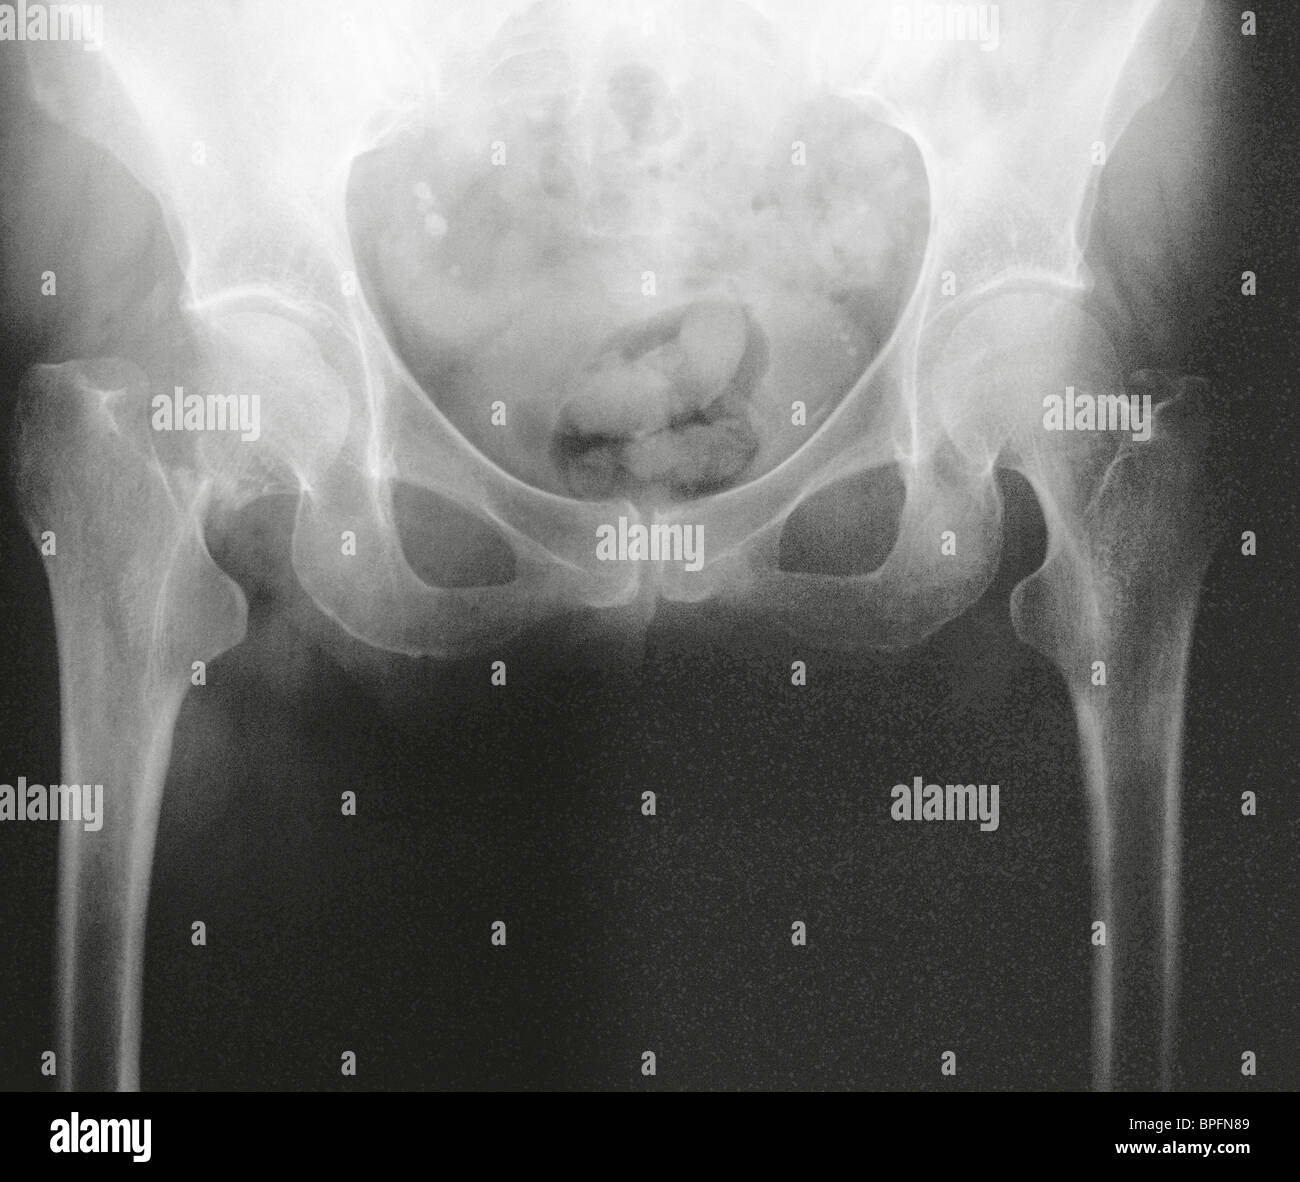 Questo paziente ha una frattura del collo del femore loro. Questa è una delle forme più comuni di frattura dell'anca. Foto Stock